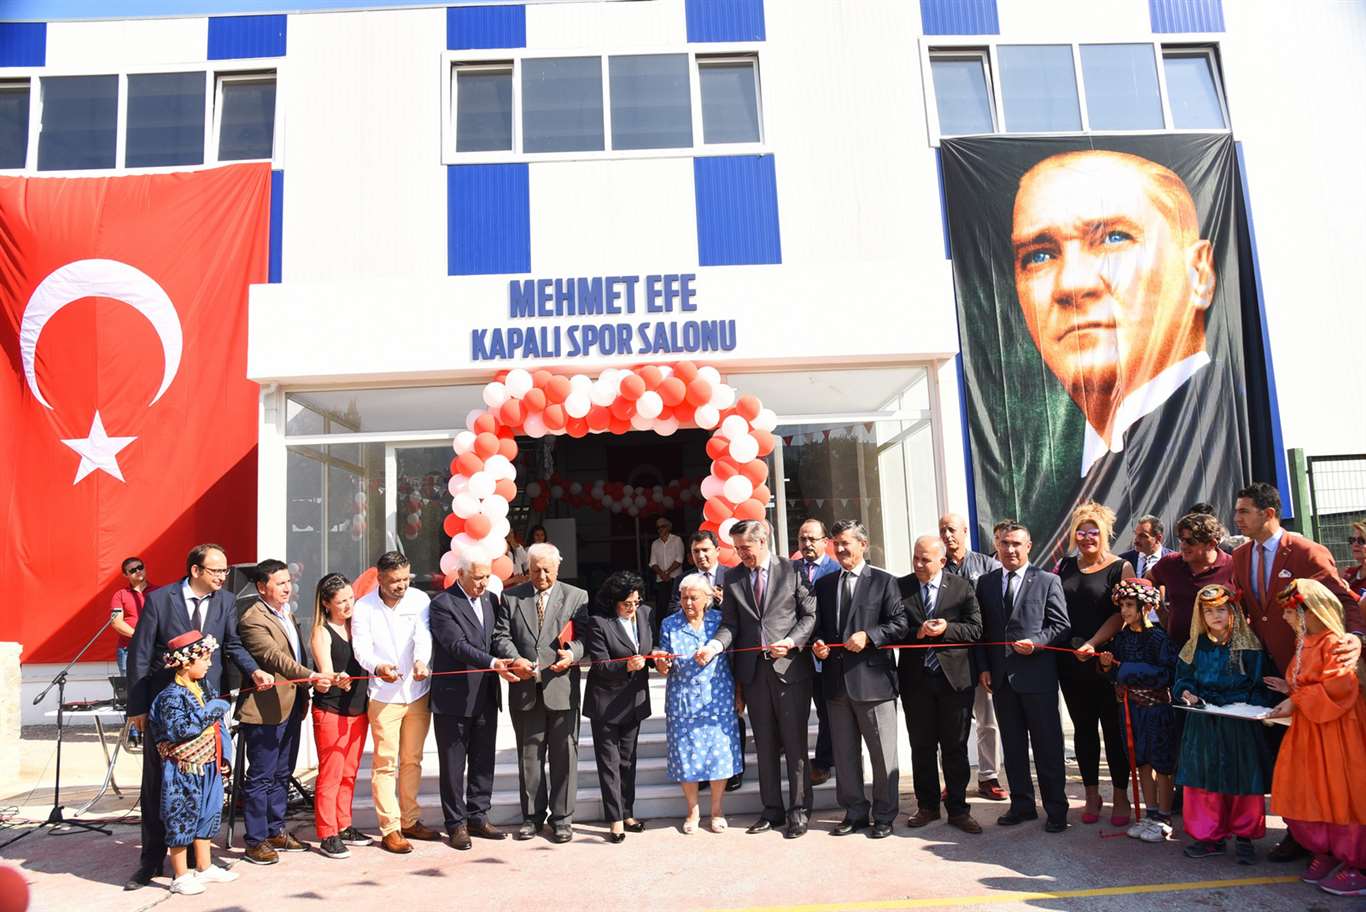 Mehmet Efe Kapalı Spor Salonu açıldı haberi